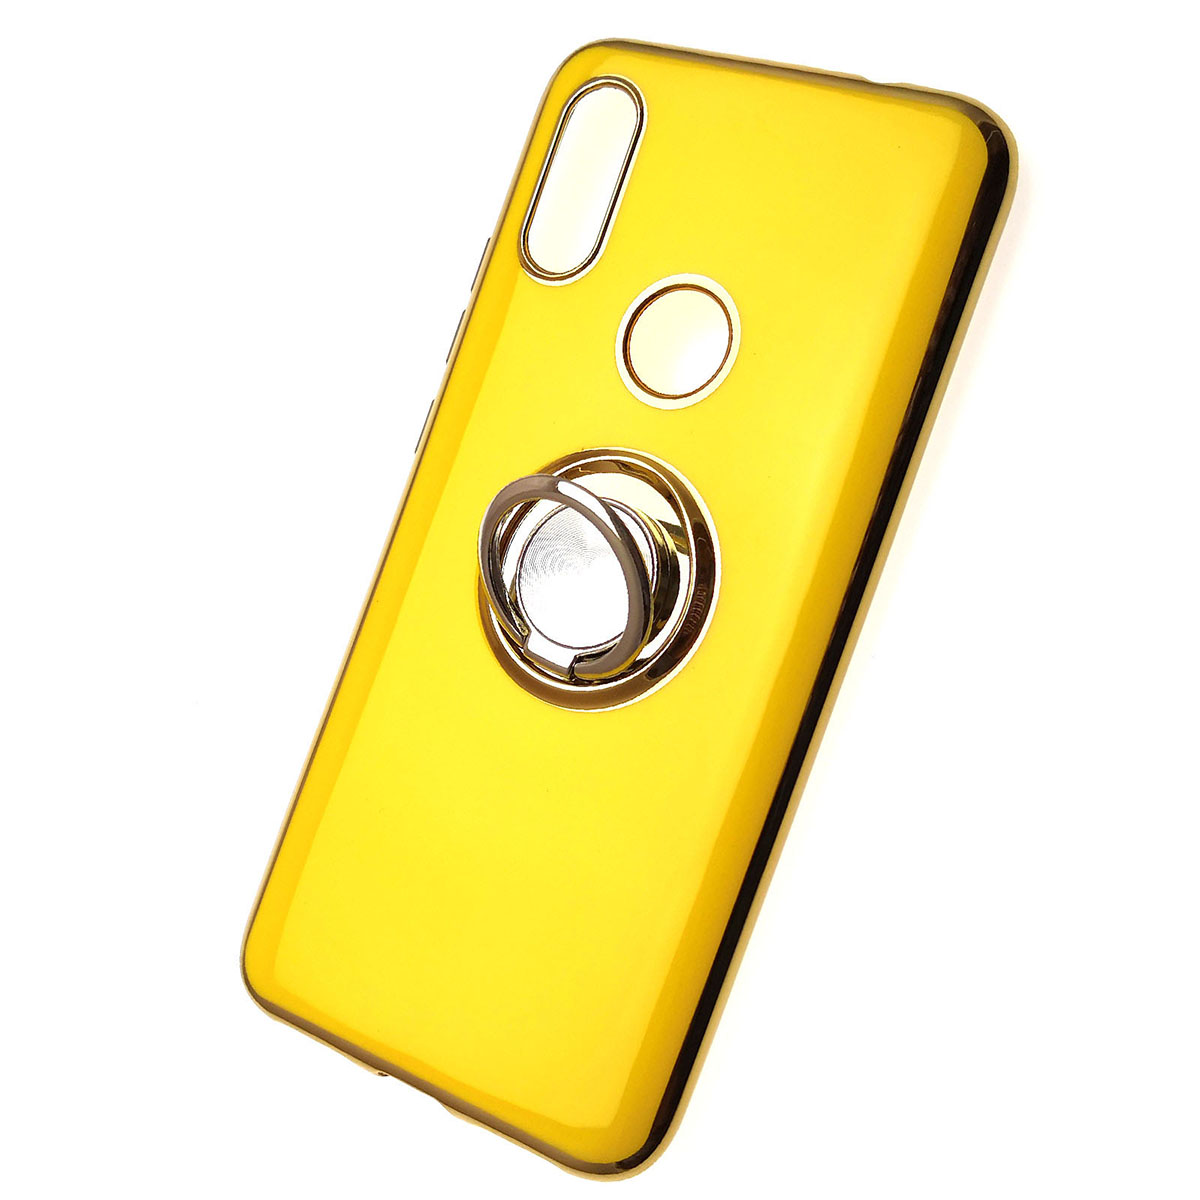 Чехол накладка для XIAOMI Redmi 7, силикон, кольцо держатель, цвет желтый.